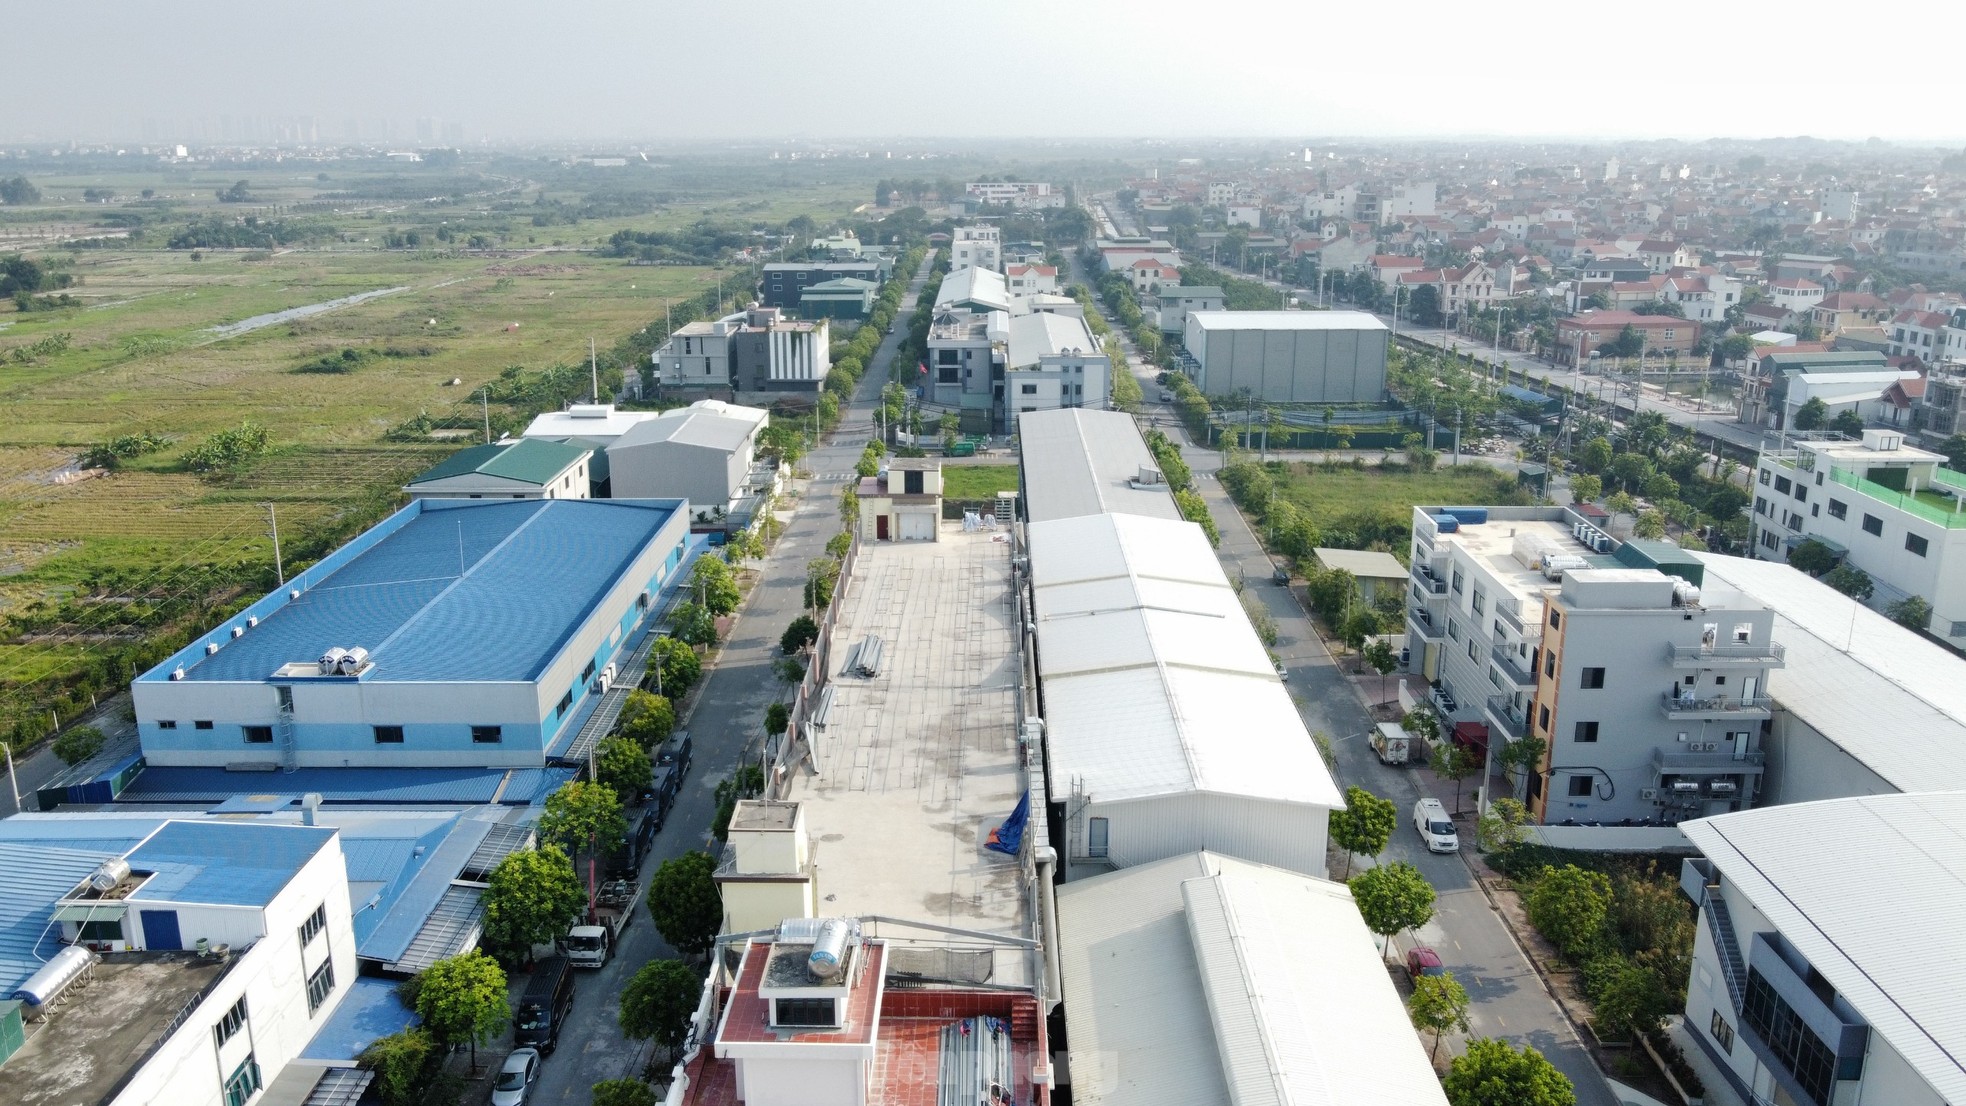 Cận cảnh loạt biệt thự 'mọc' trong cụm công nghiệp làng nghề ở Hà Nội - Ảnh 12.